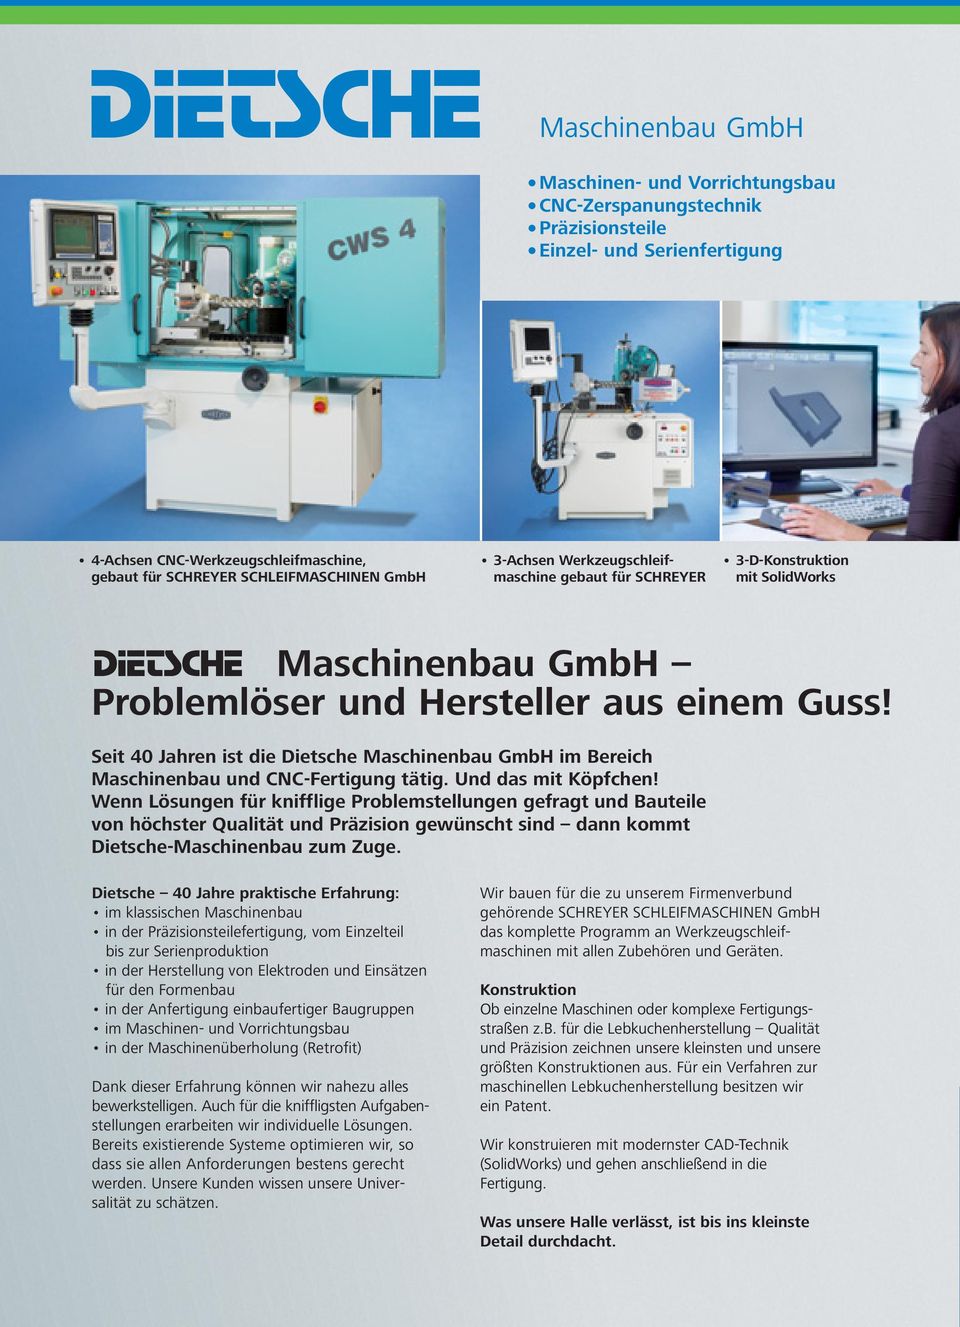 Seit 40 Jahren ist die Dietsche Maschinenbau GmbH im Bereich Maschinenbau und CNC-Fertigung tätig. Und das mit Köpfchen!